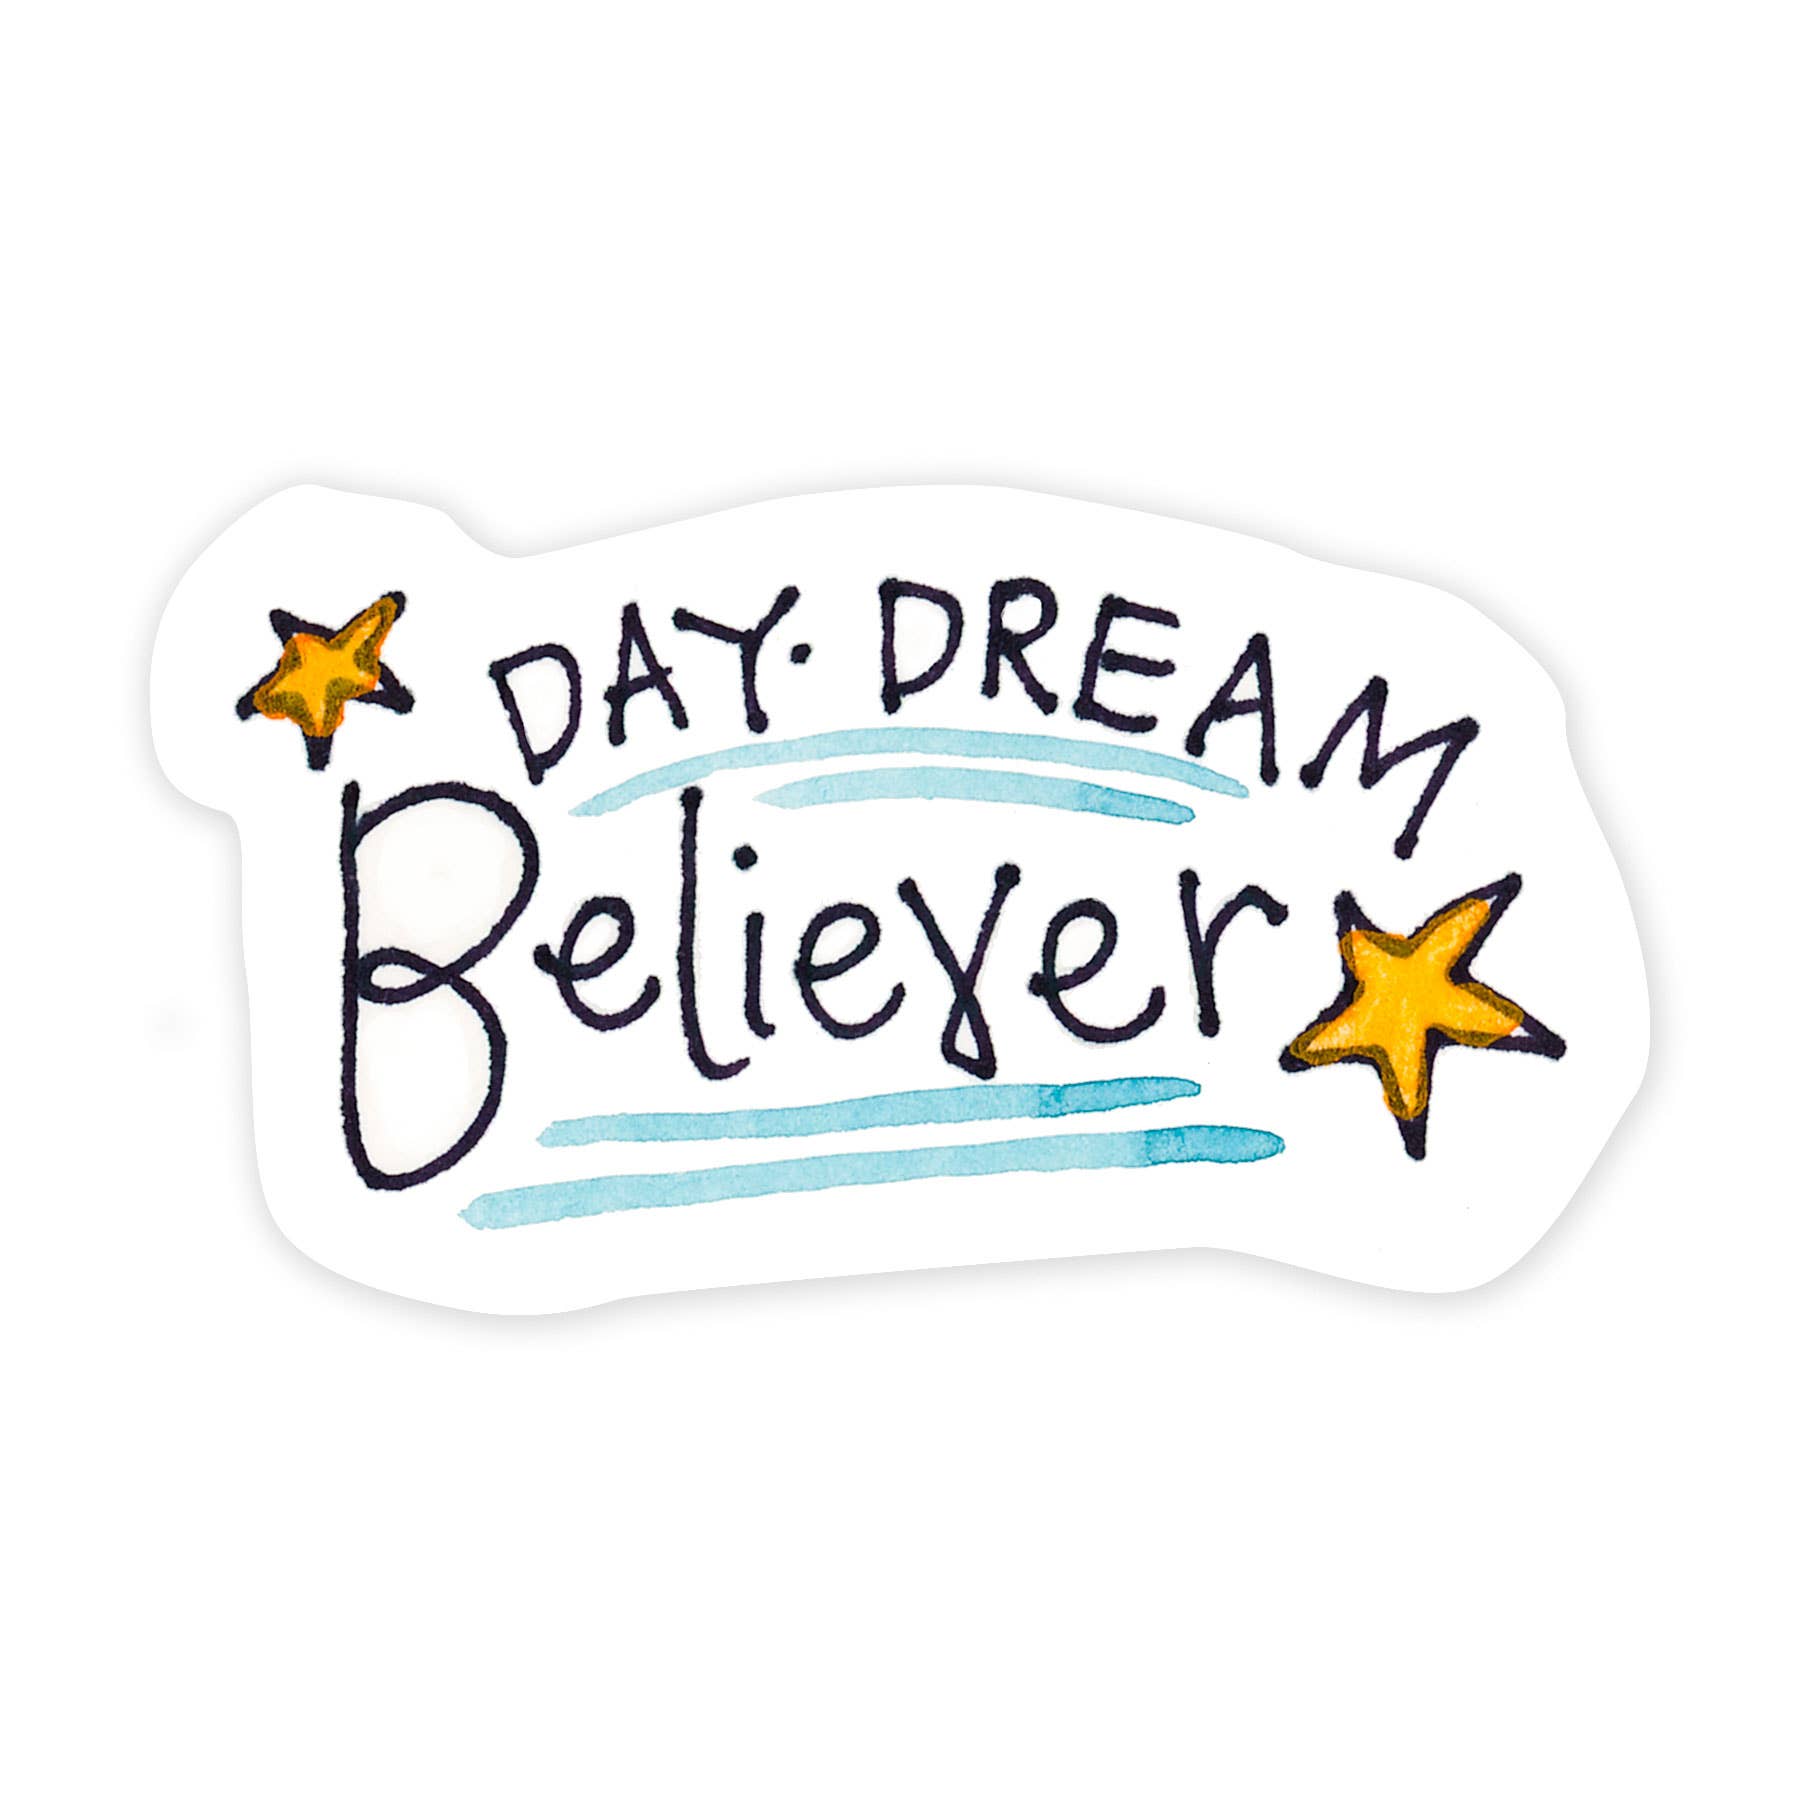 Day Dream Believer 3 Inch Sticker - Spiral Circle